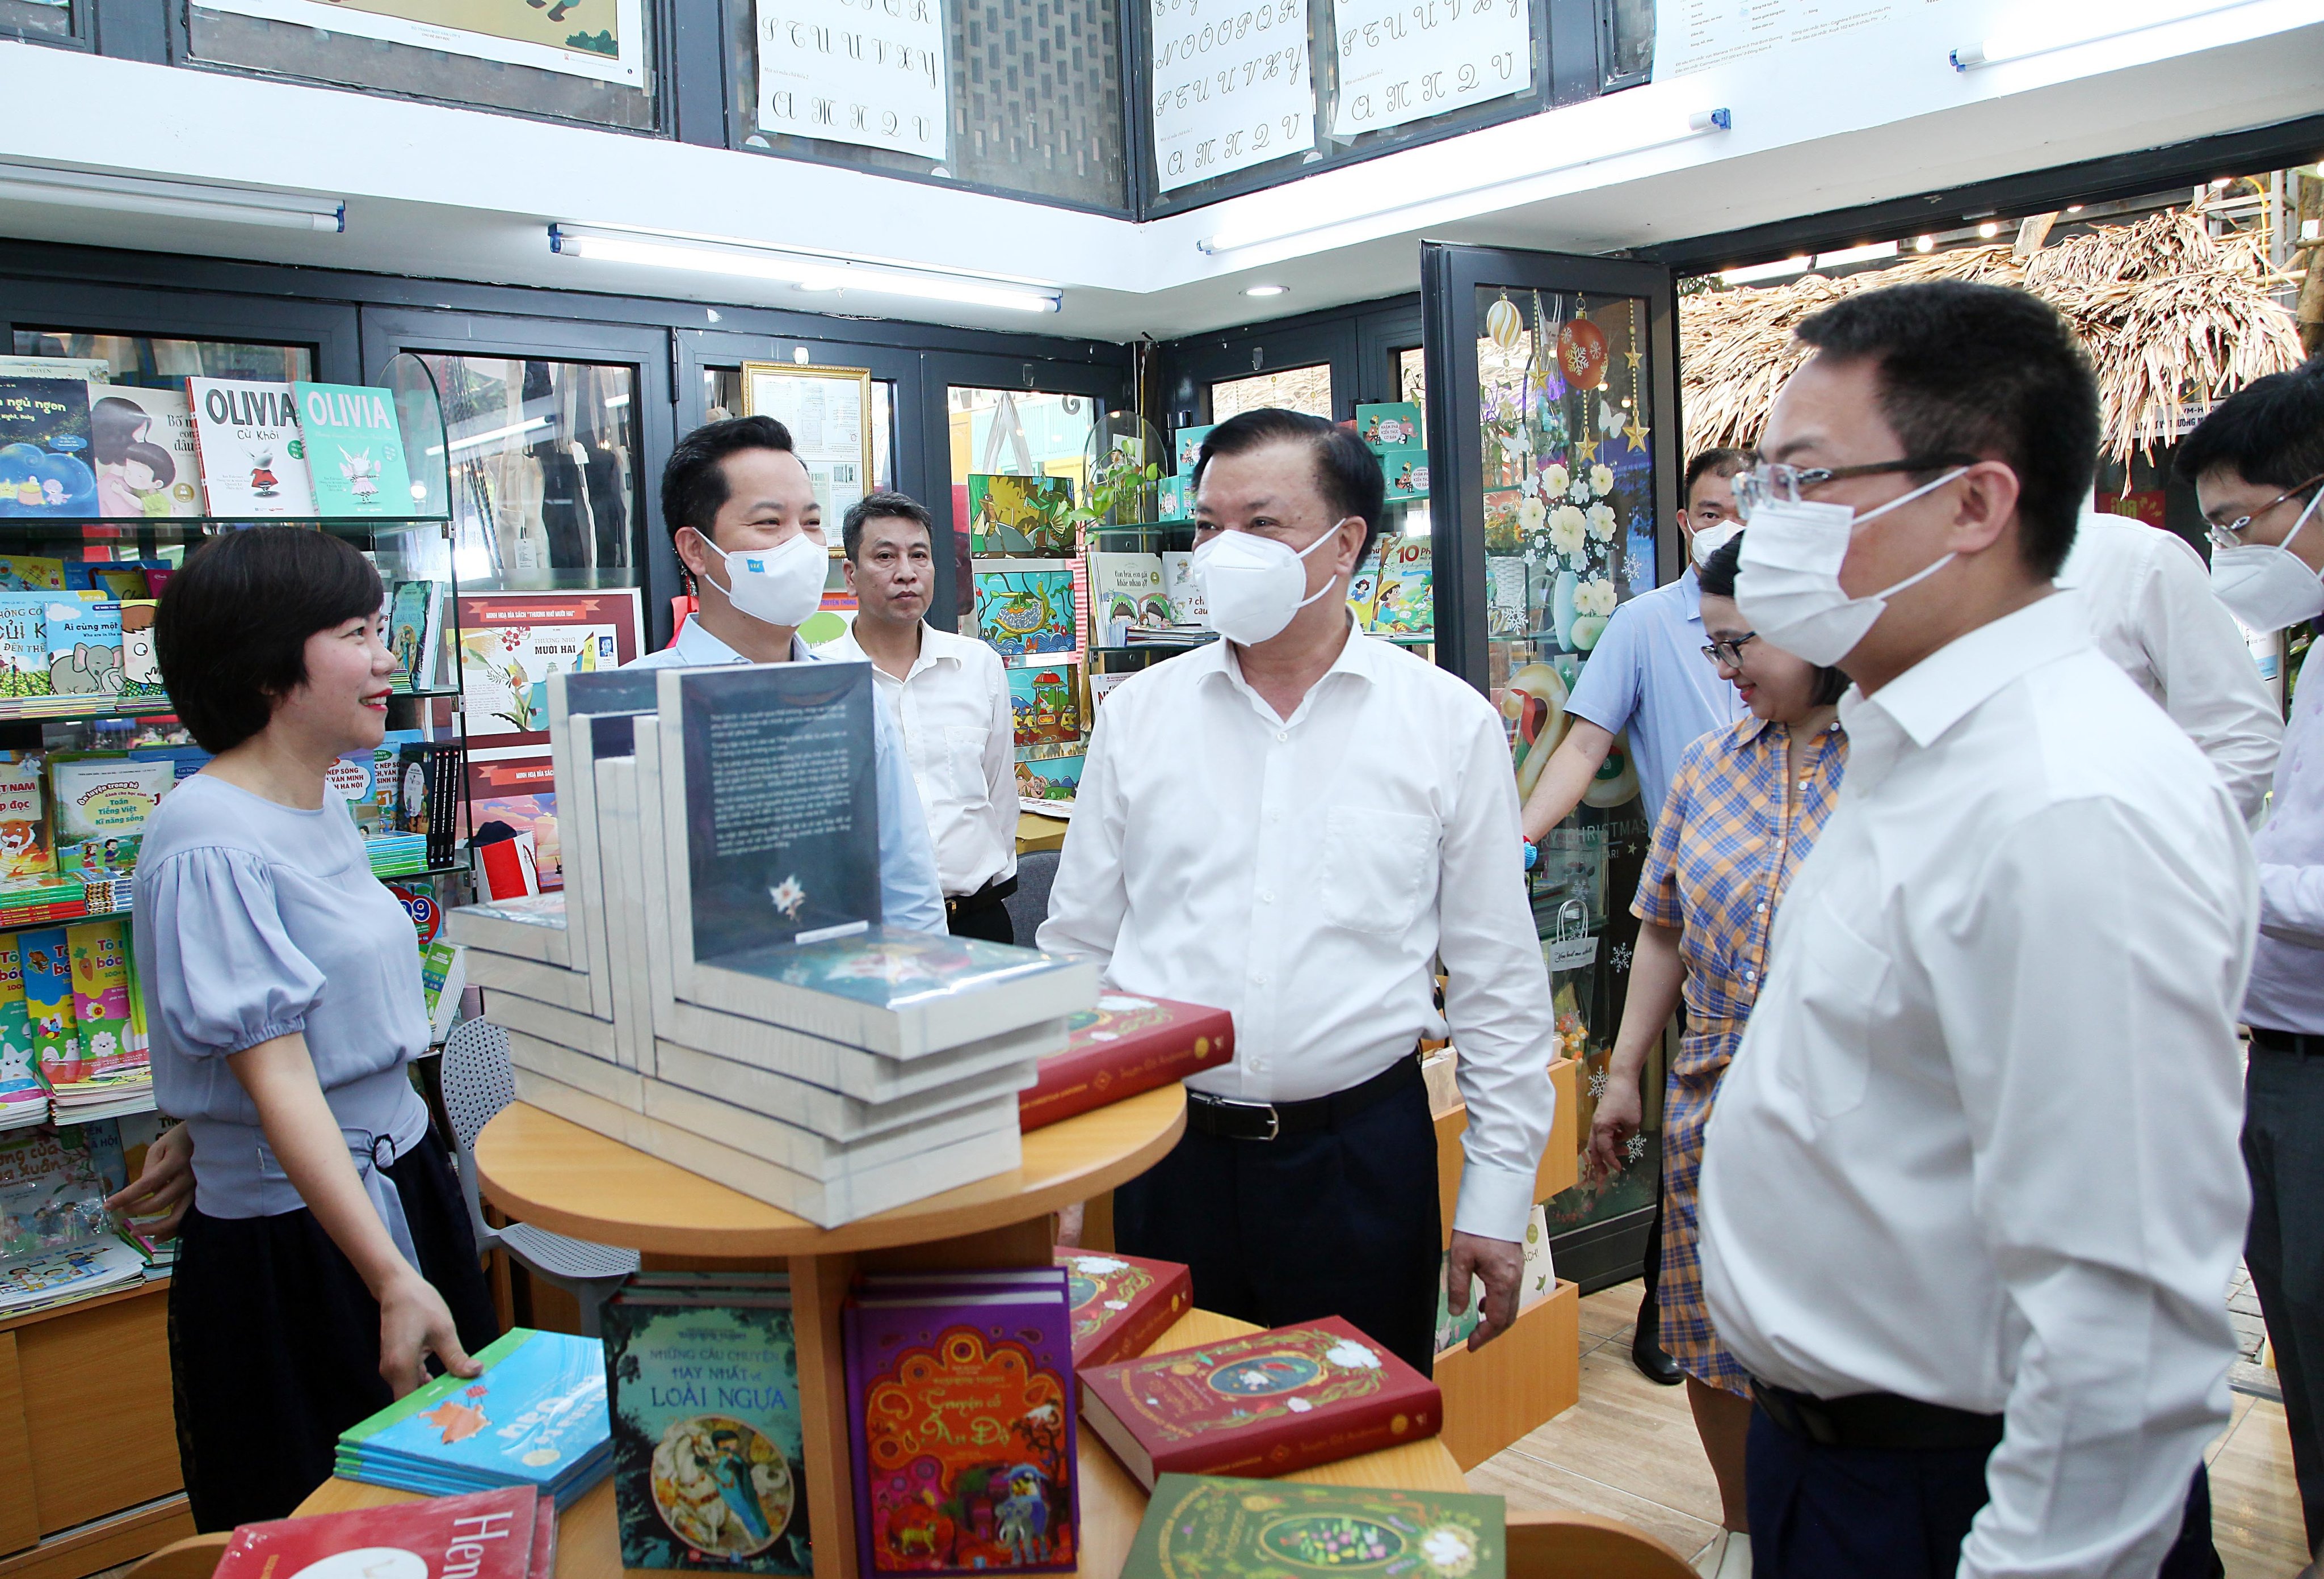 Tưng bừng các hoạt động chào mừng Ngày Sách và Văn hóa đọc Việt Nam tại Phố sách Hà Nội - 1